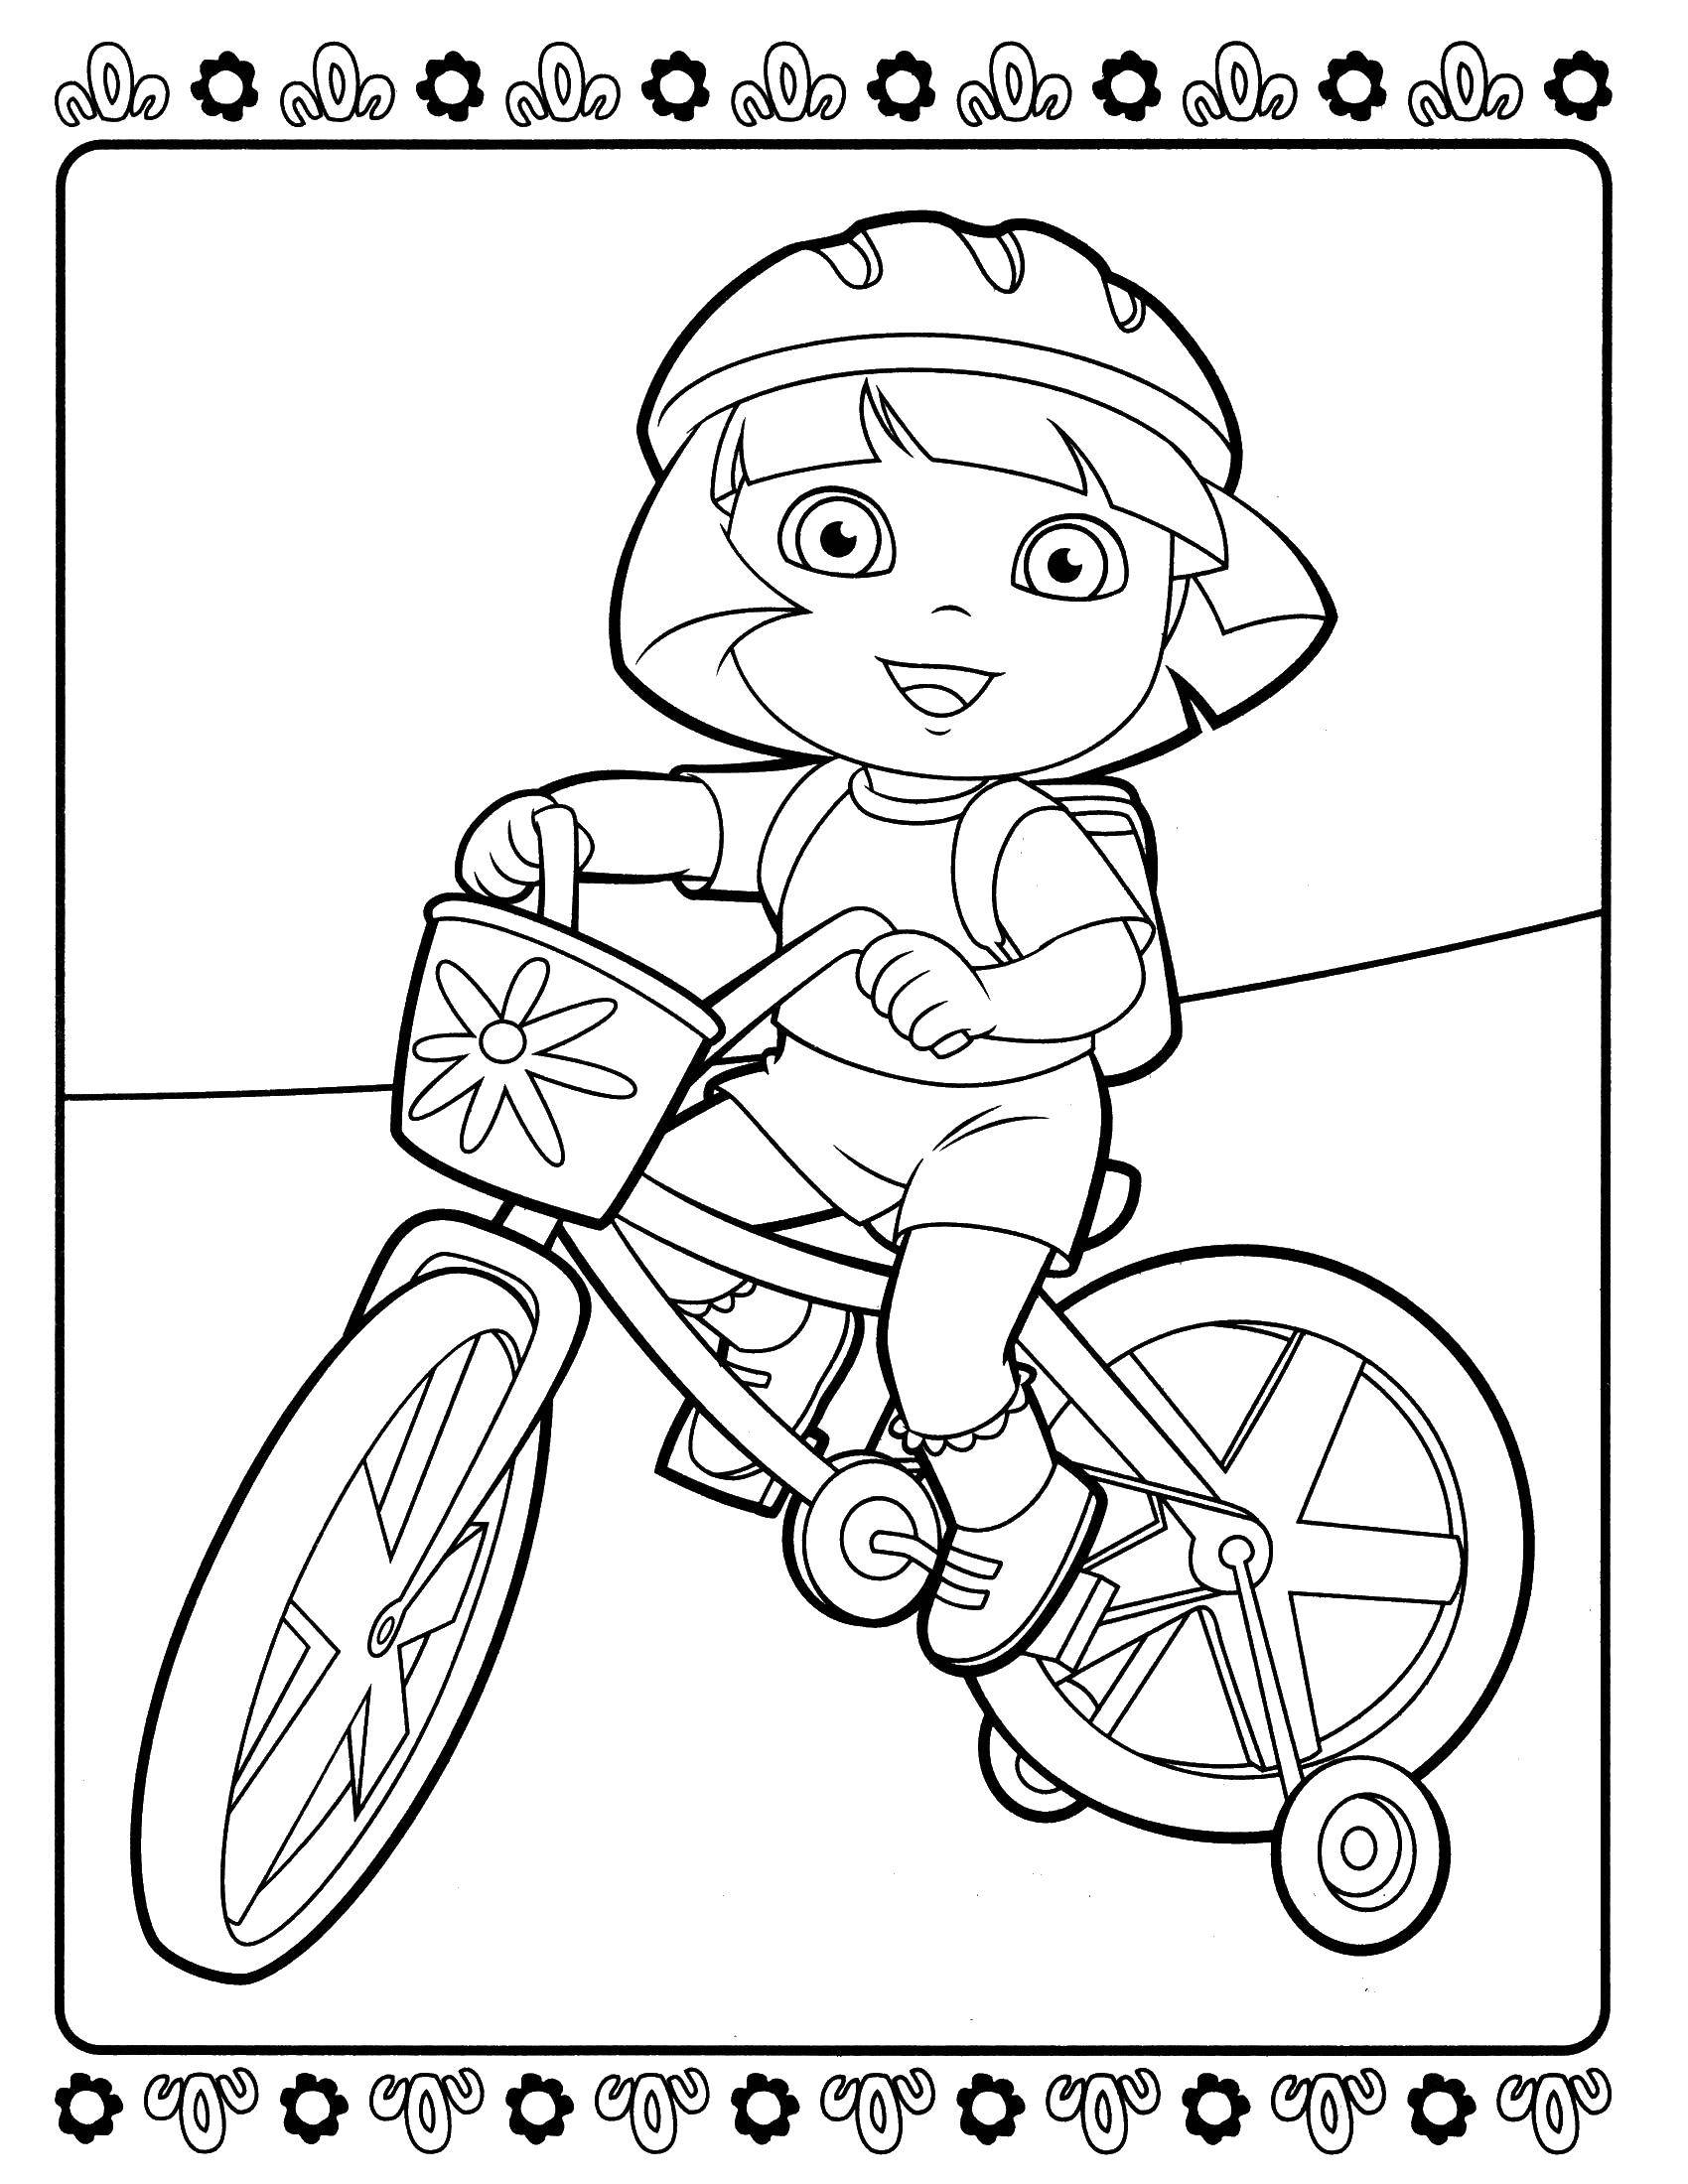 Coloring Dora riding her bike. Category Dora. Tags:  Dora, bike.